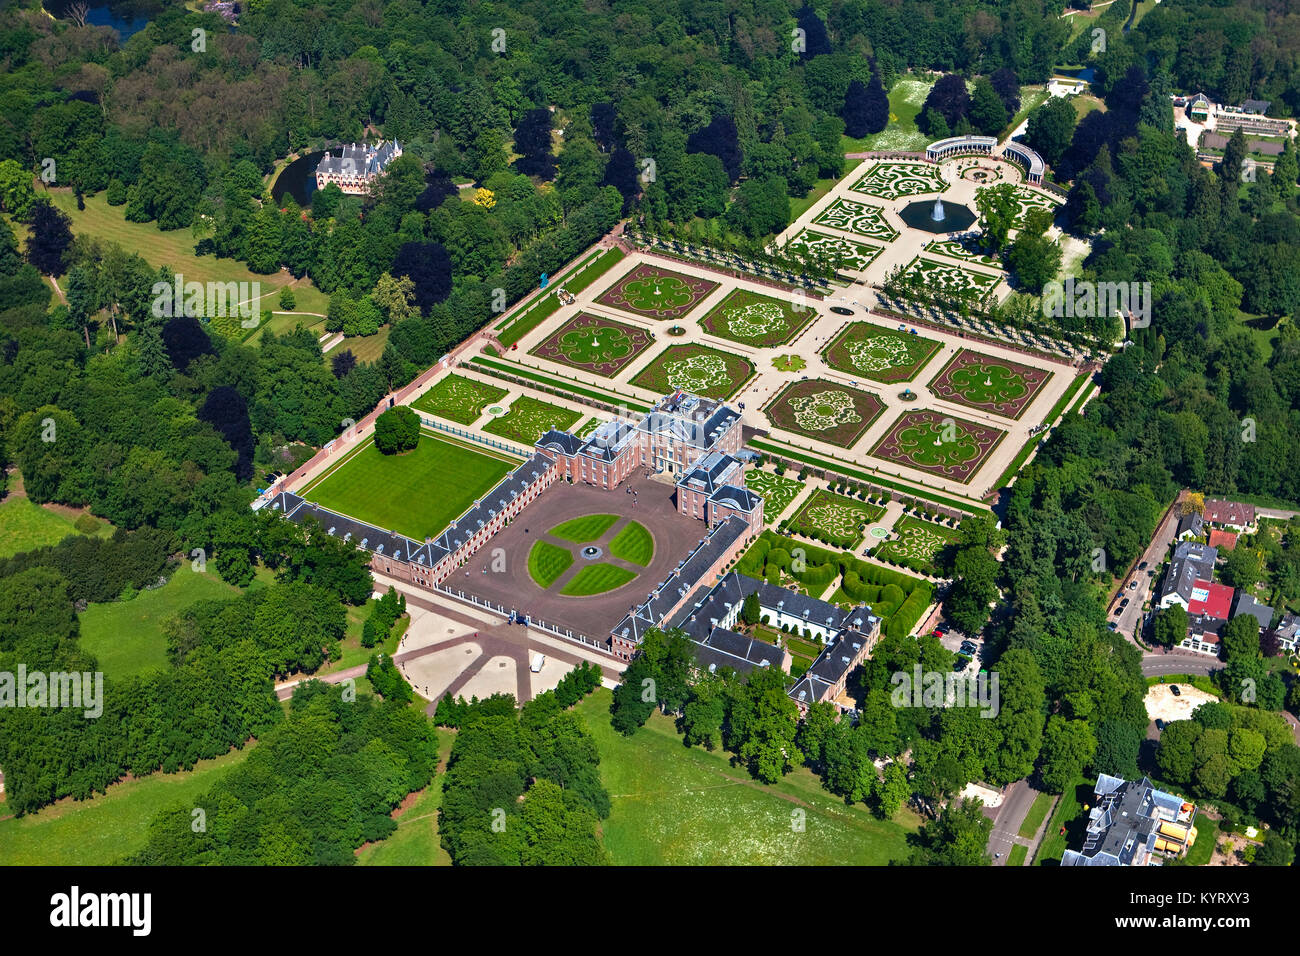 Les Pays-Bas, Apeldoorn, palais royal Het Loo. Musée et Jardins. Vue aérienne. Banque D'Images